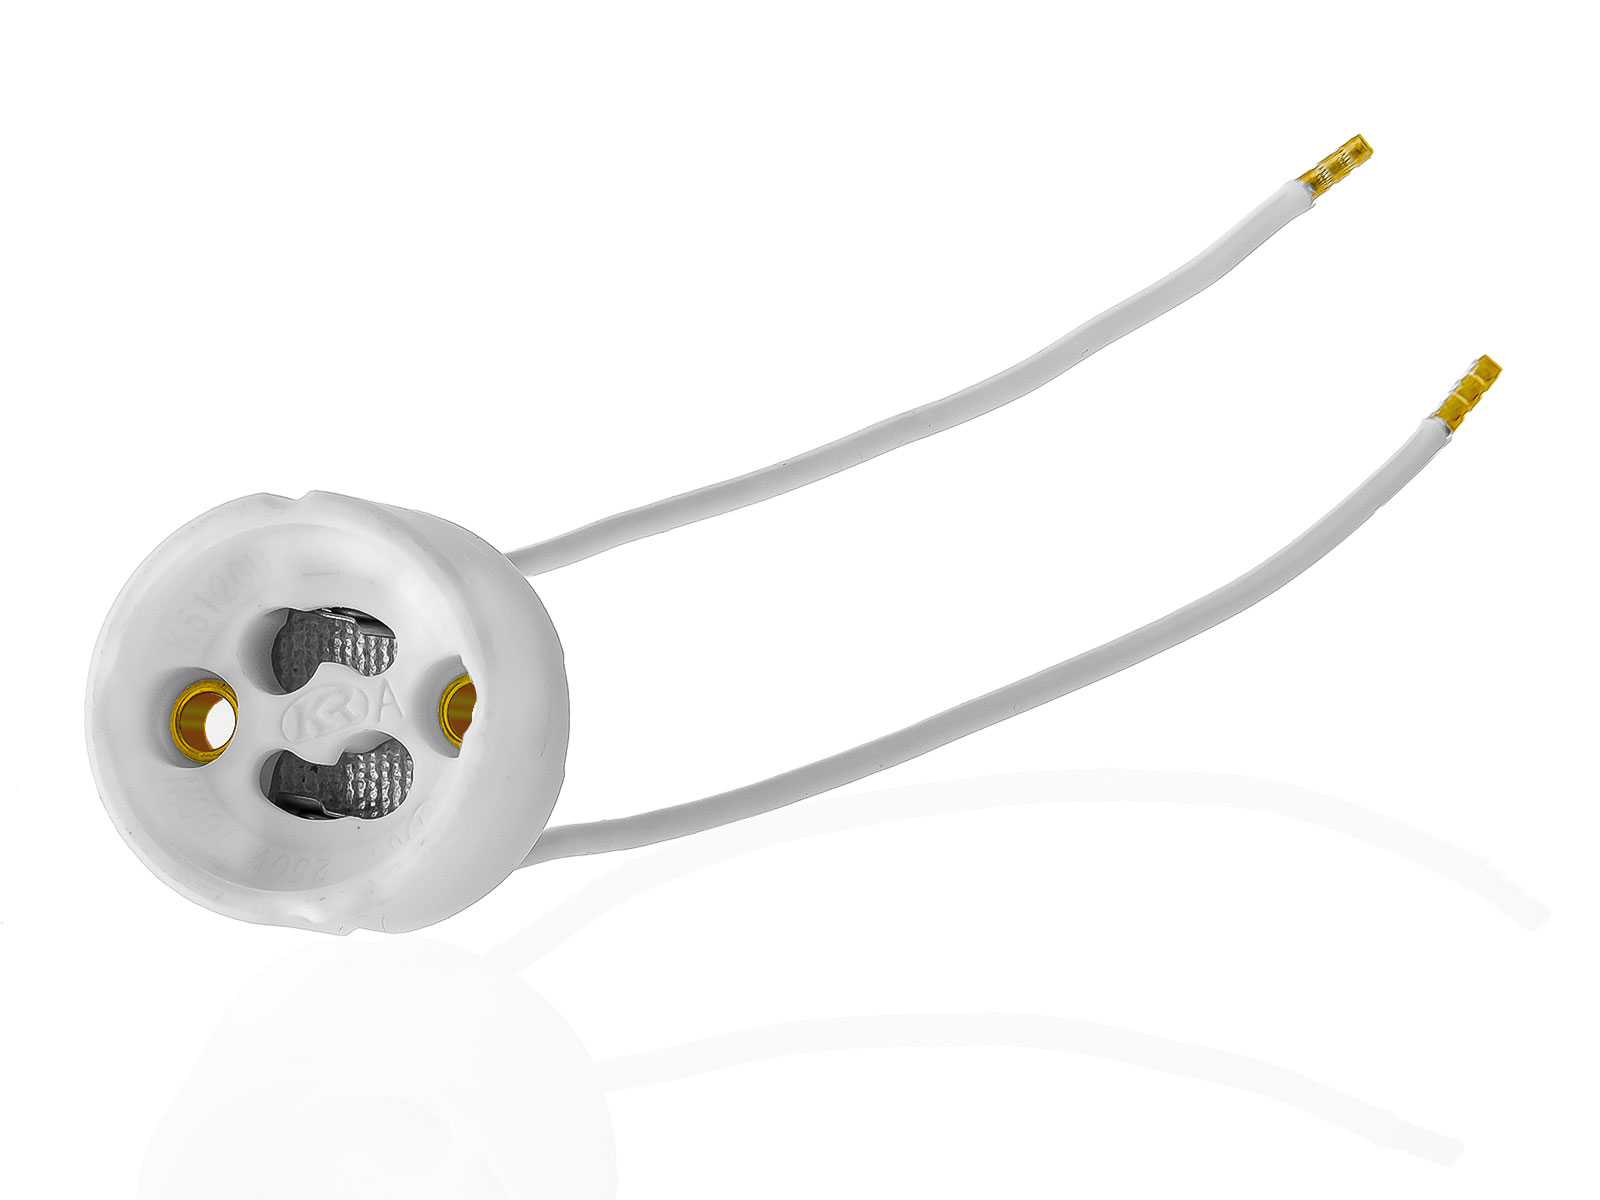 10x GU10 Lampenfassung Sockel aus Keramik mit Qualitäts Silikonkabel für LED und Halogenleuchtmittel XmediaSat GU10.S10 weiß